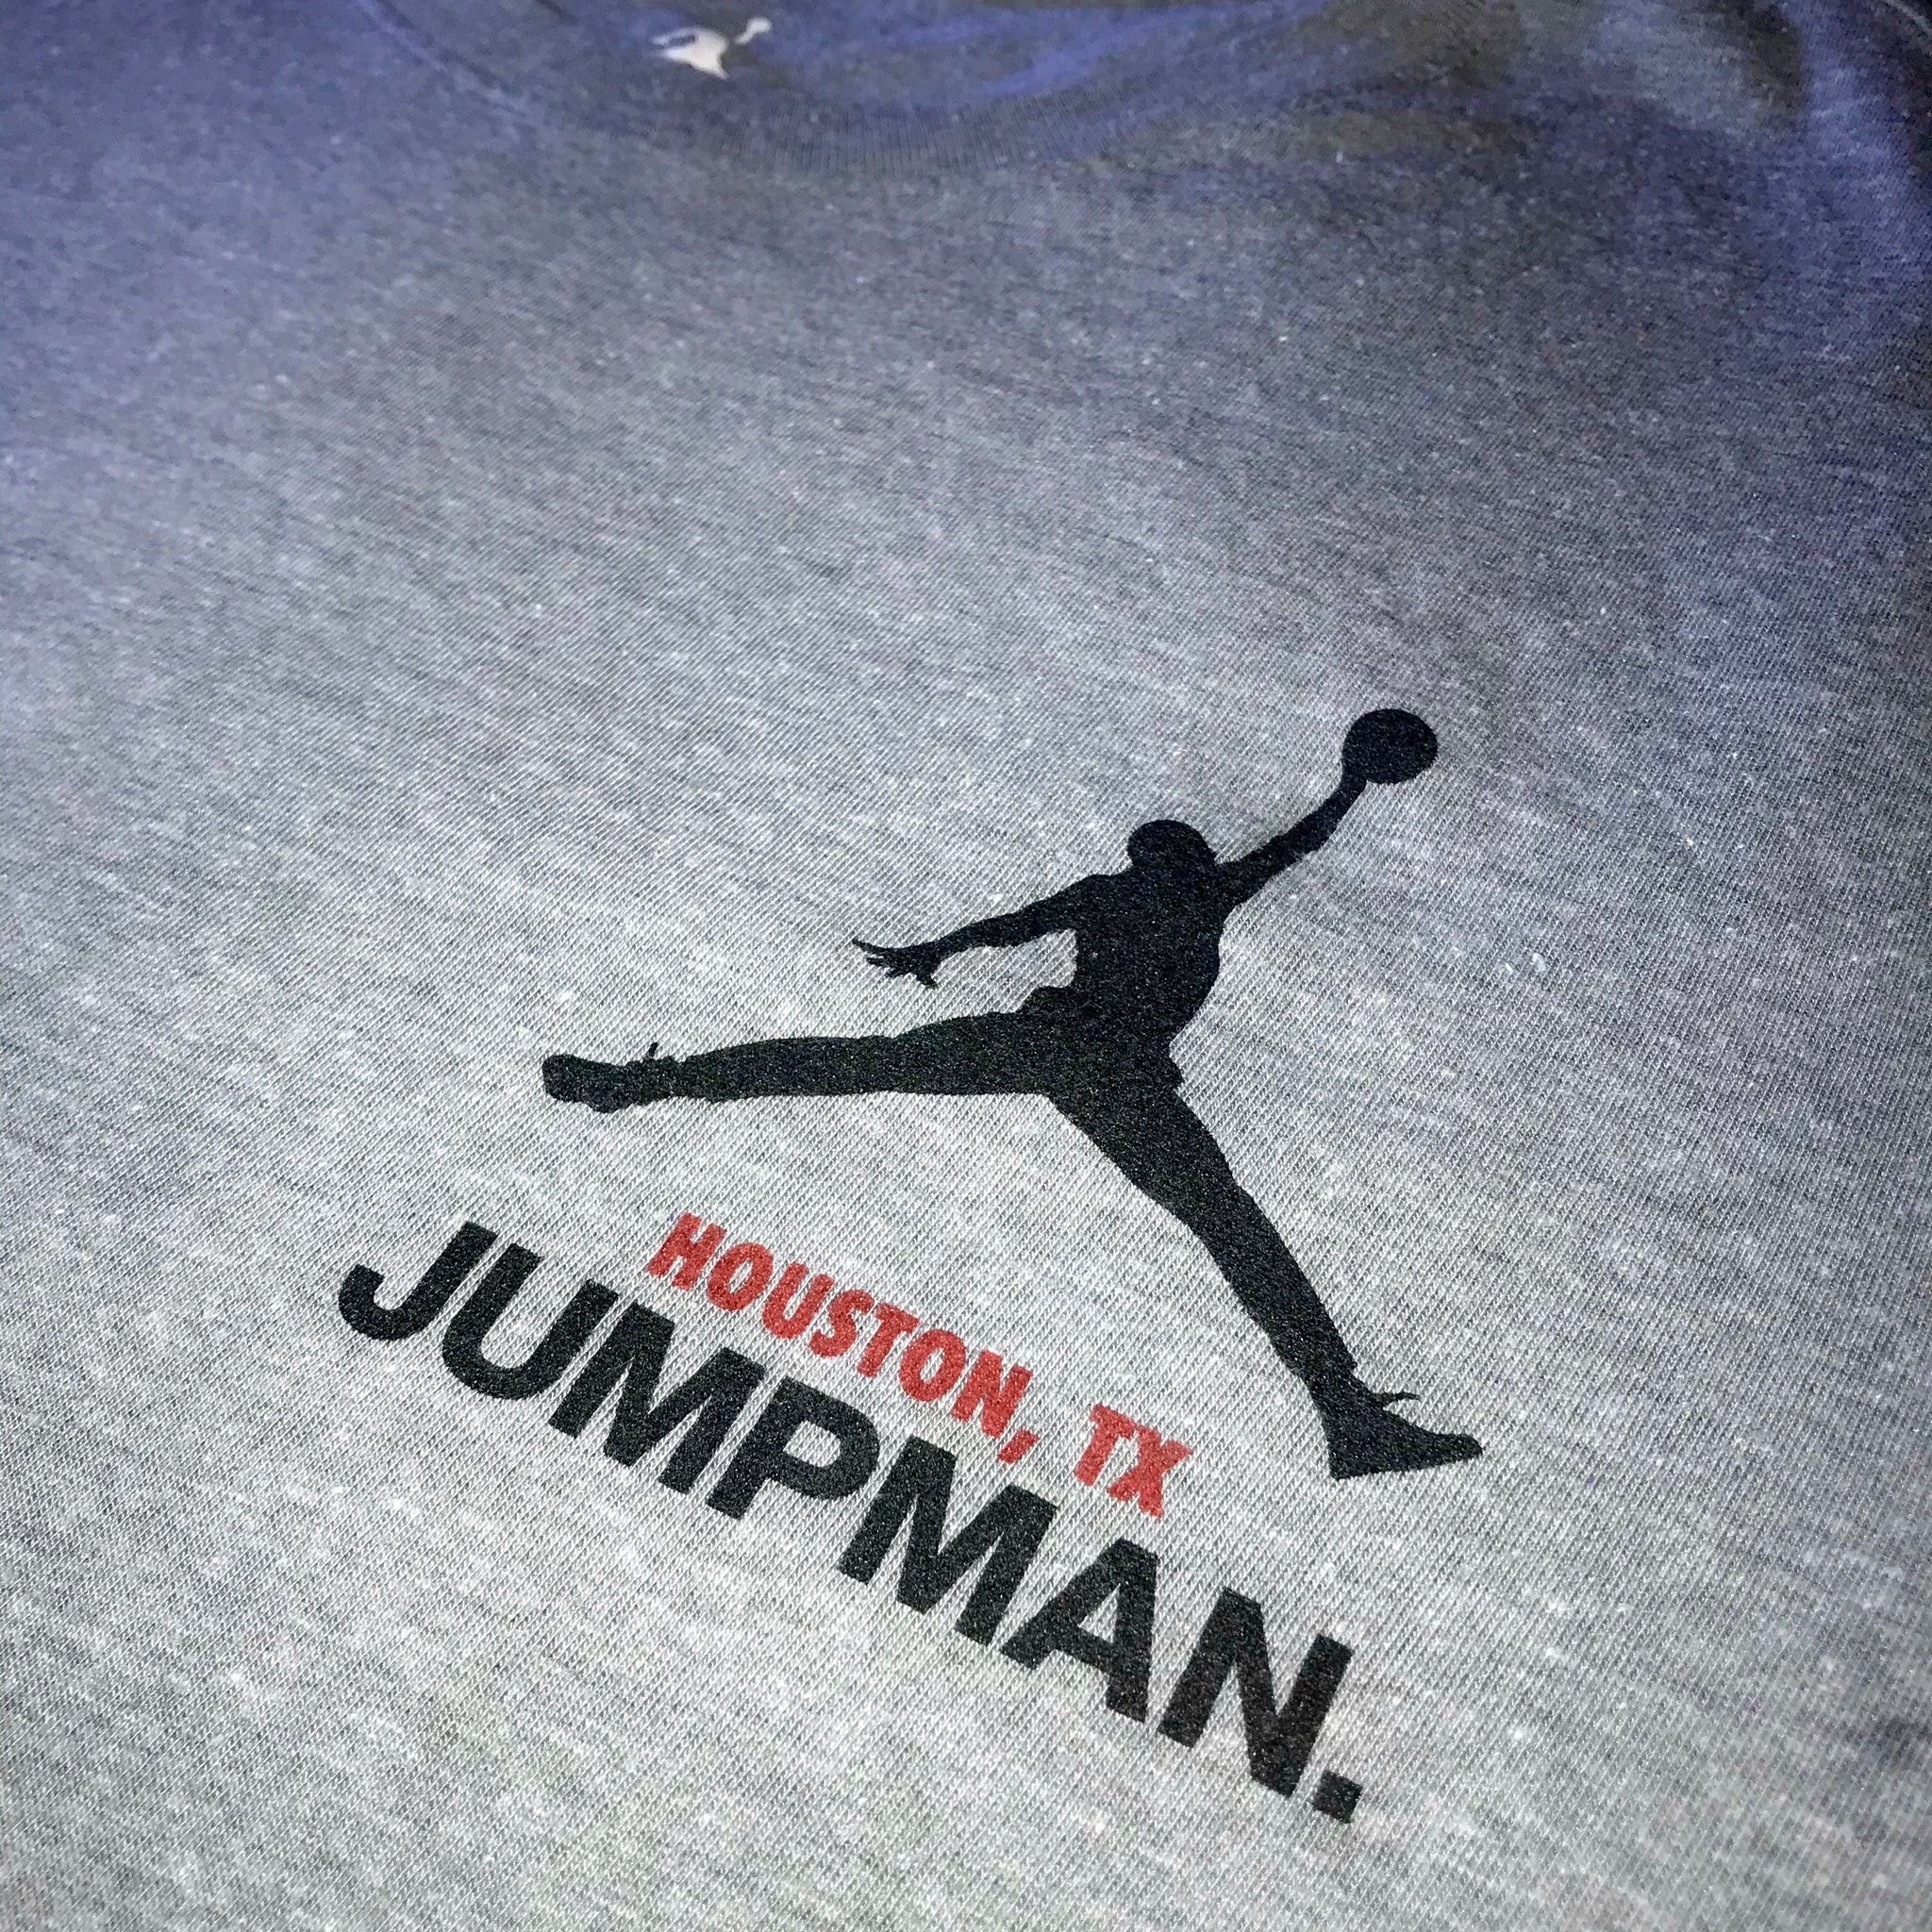 Houston Vintage Shirt, Astros Vintage 1994 Taz shirt,Astros